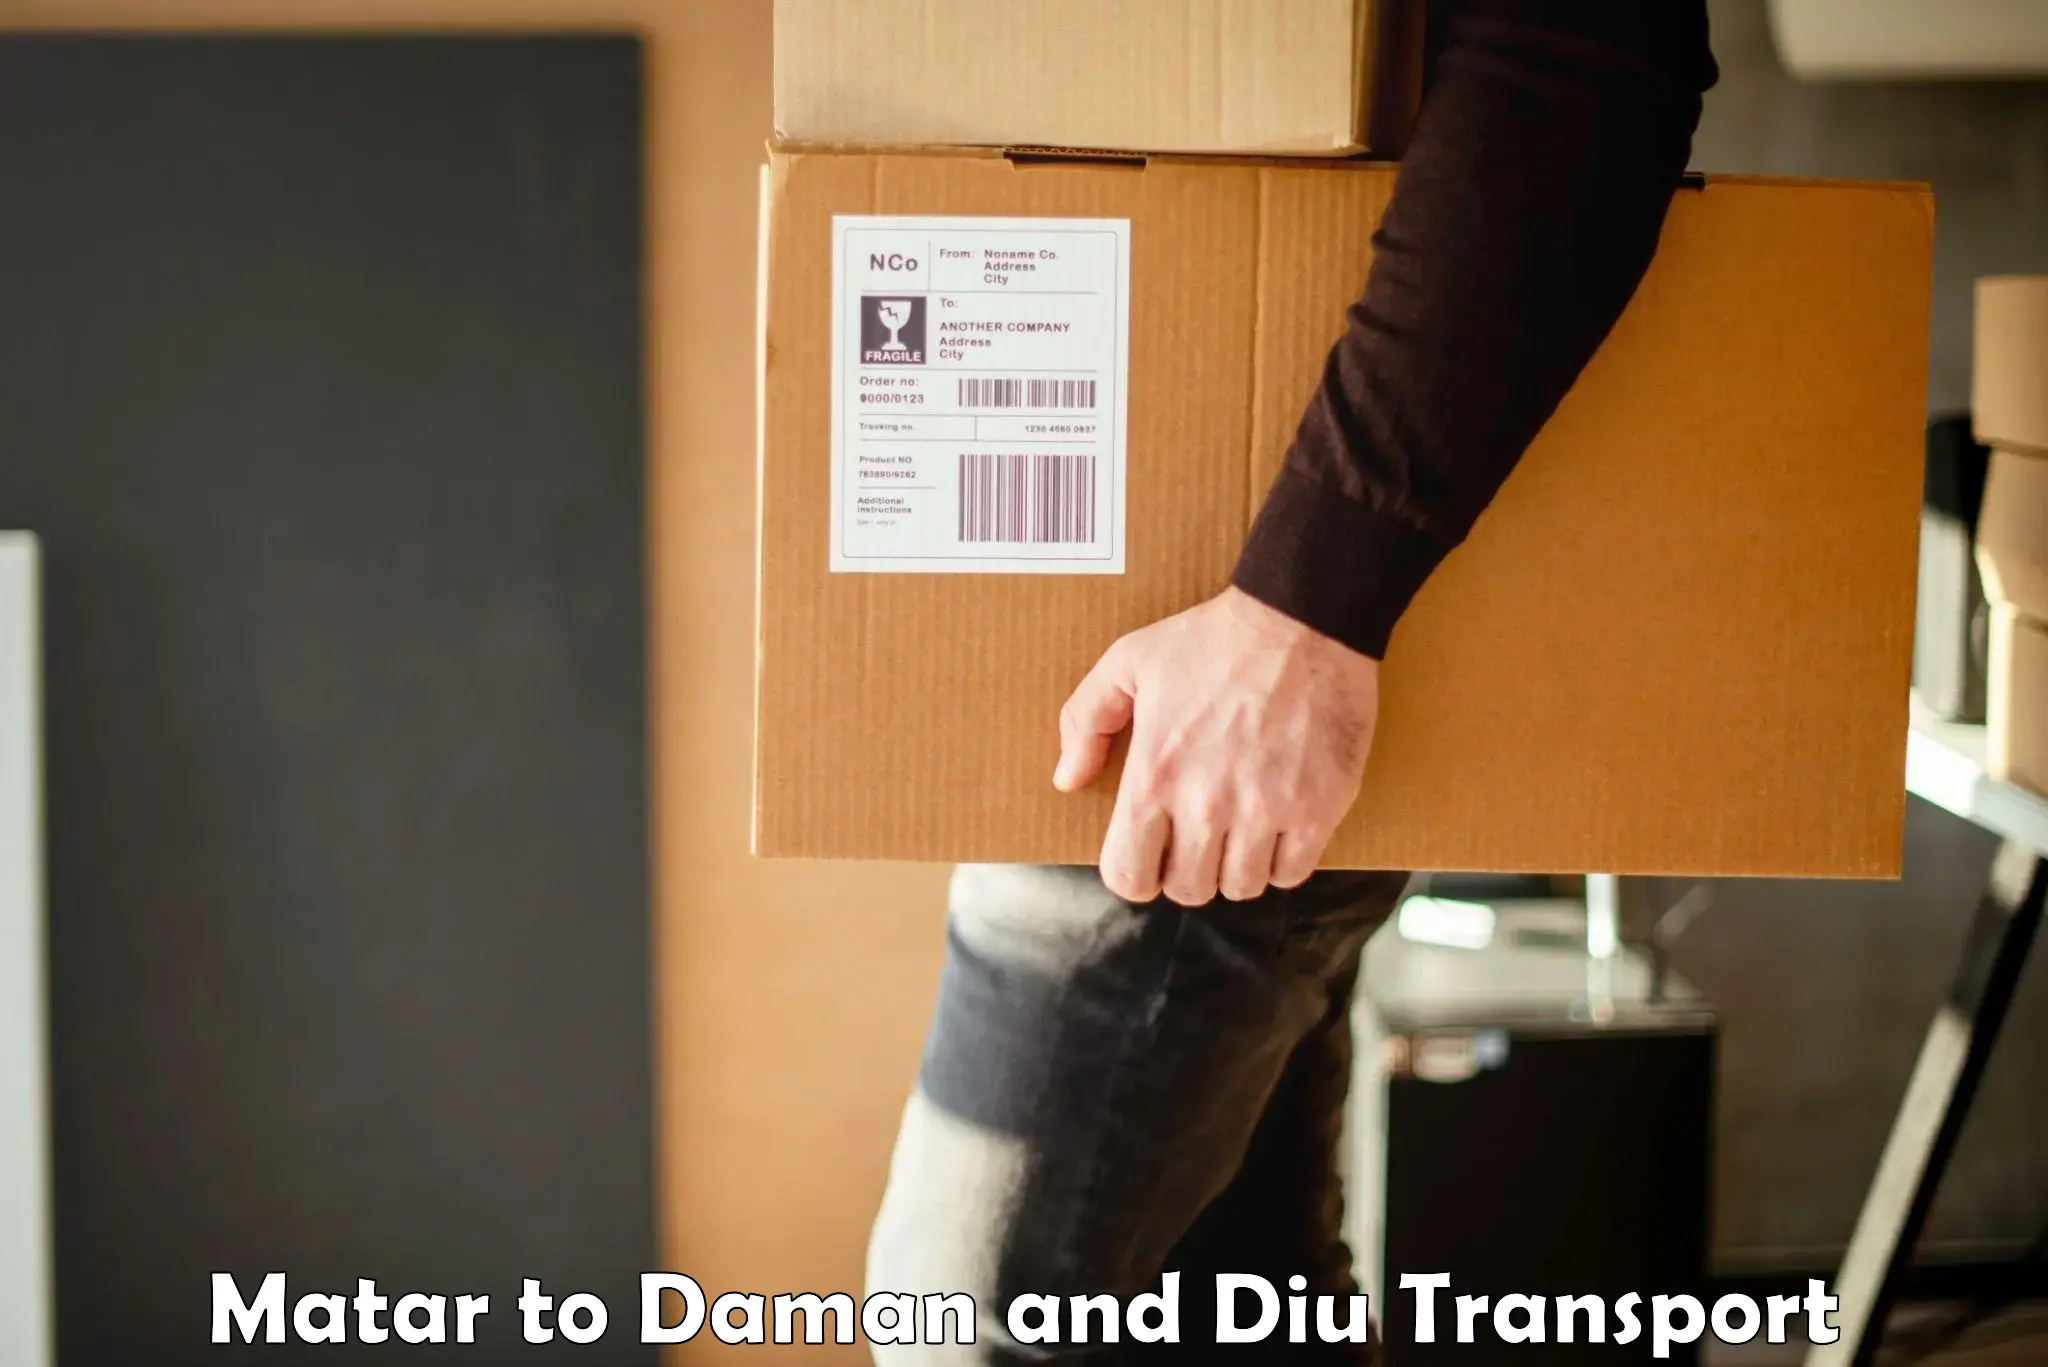 Lorry transport service Matar to Daman and Diu